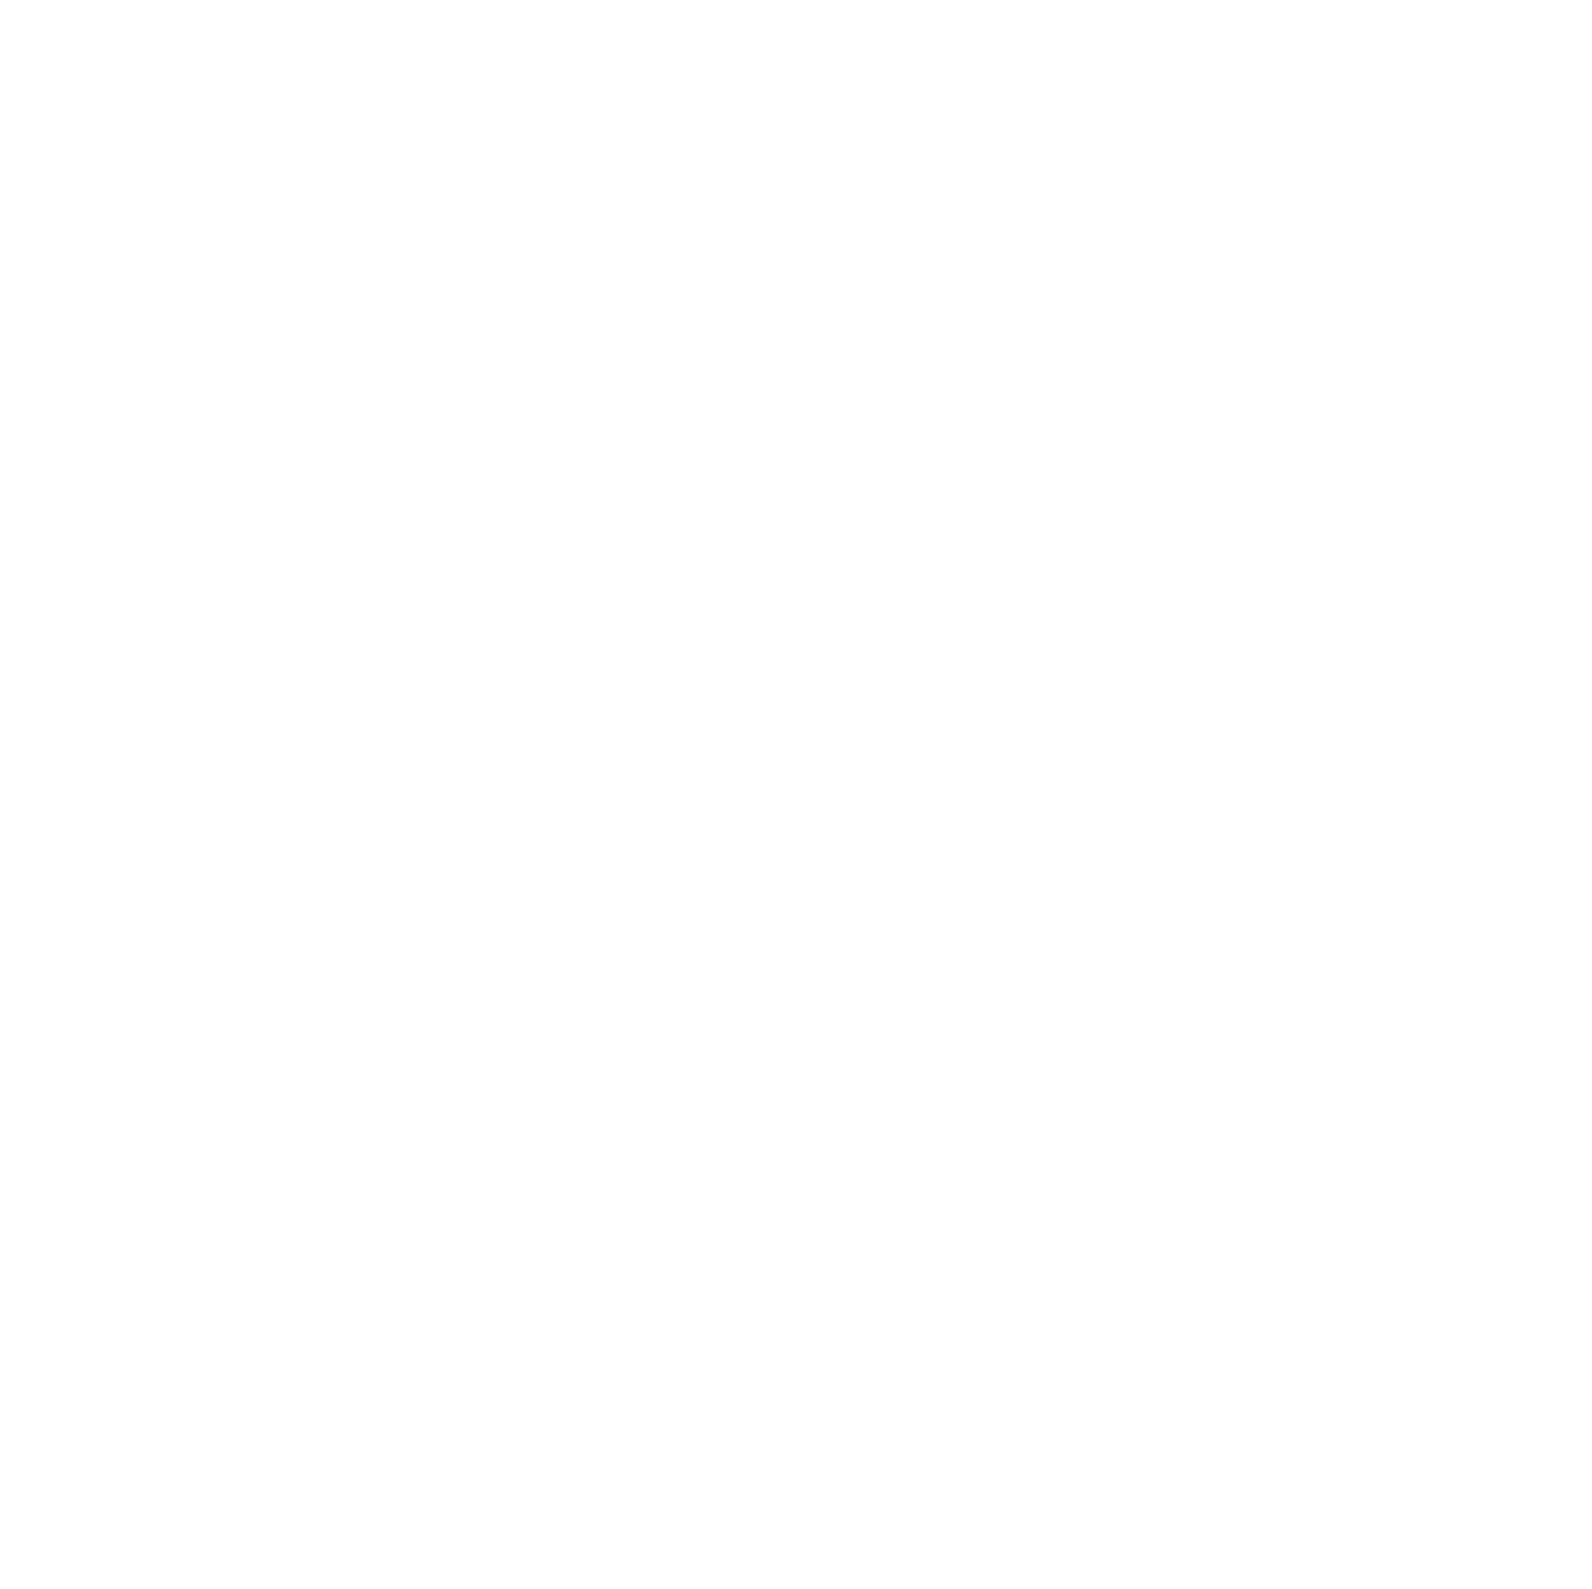 abrdn logo for dark backgrounds (transparent PNG)